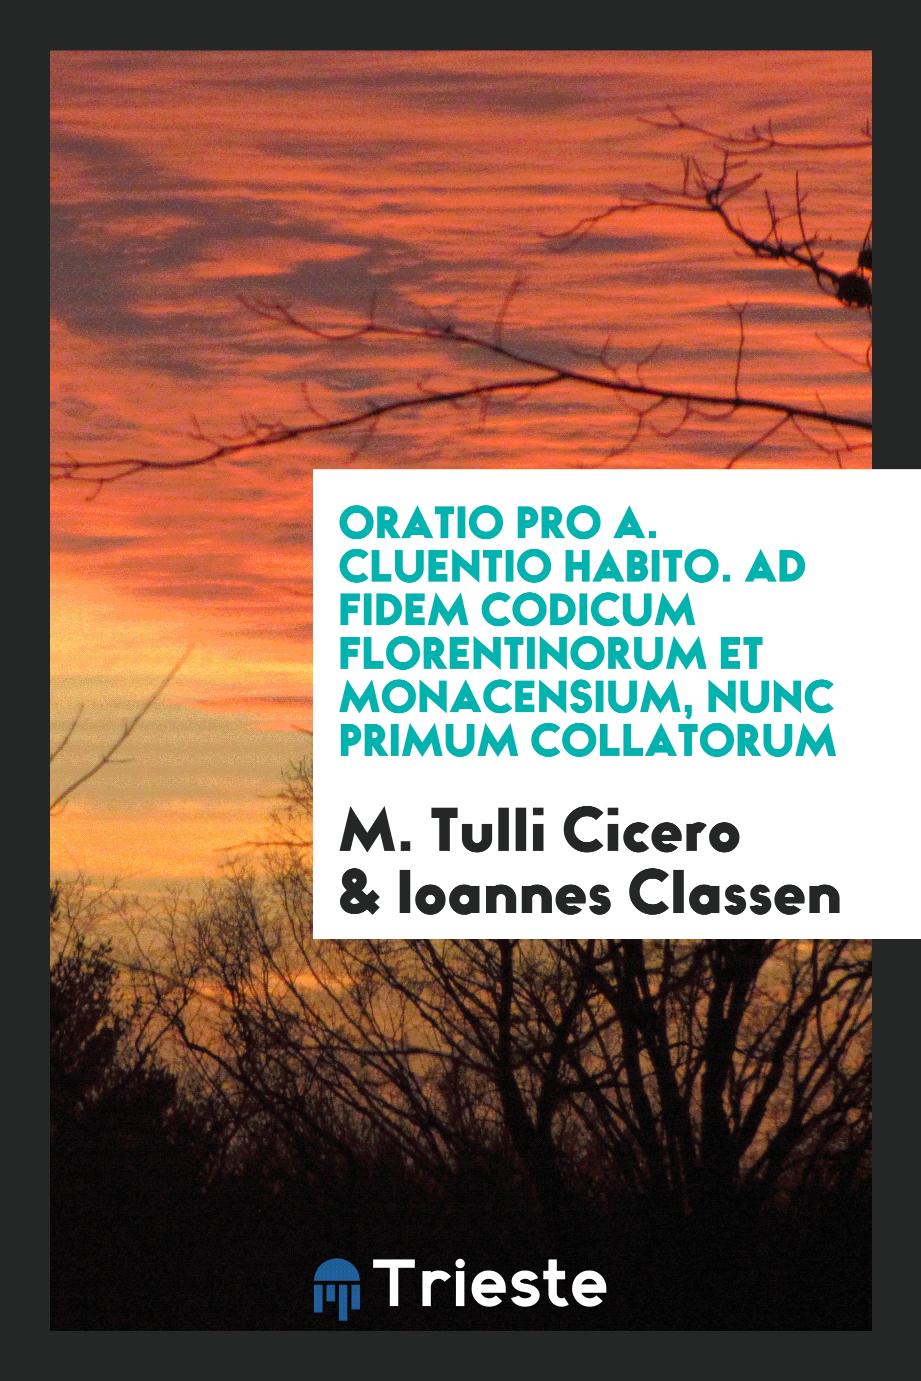 Oratio pro A. Cluentio Habito. Ad fidem codicum Florentinorum et Monacensium, nunc primum collatorum